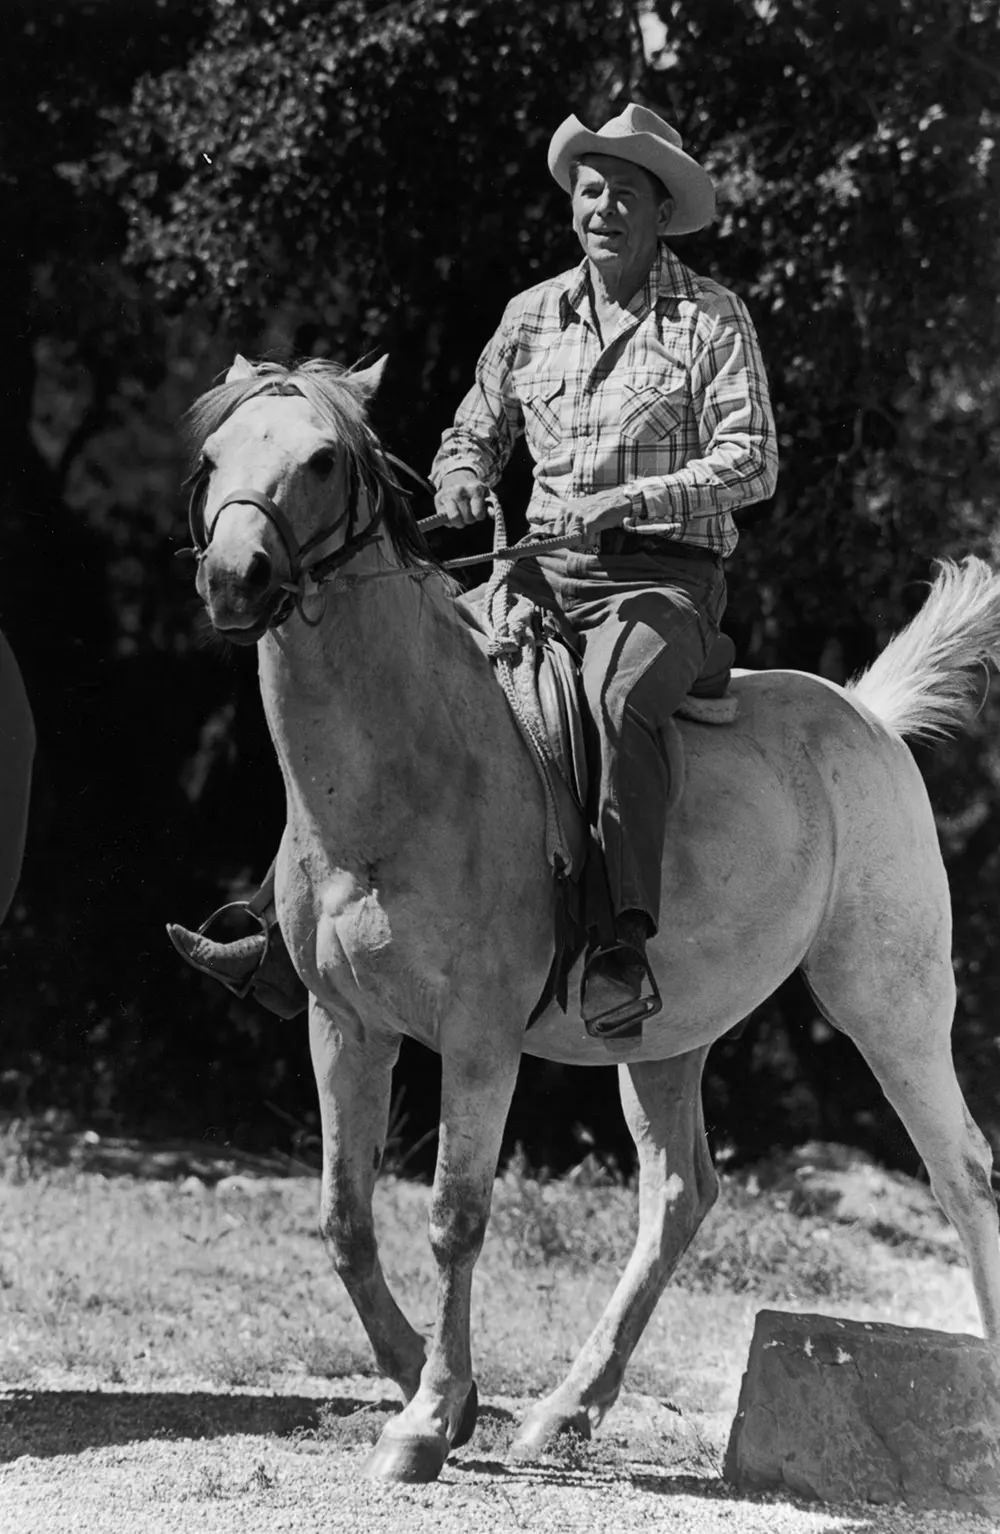 Ronald Reagan rides a horse at his California ranch, 1981.